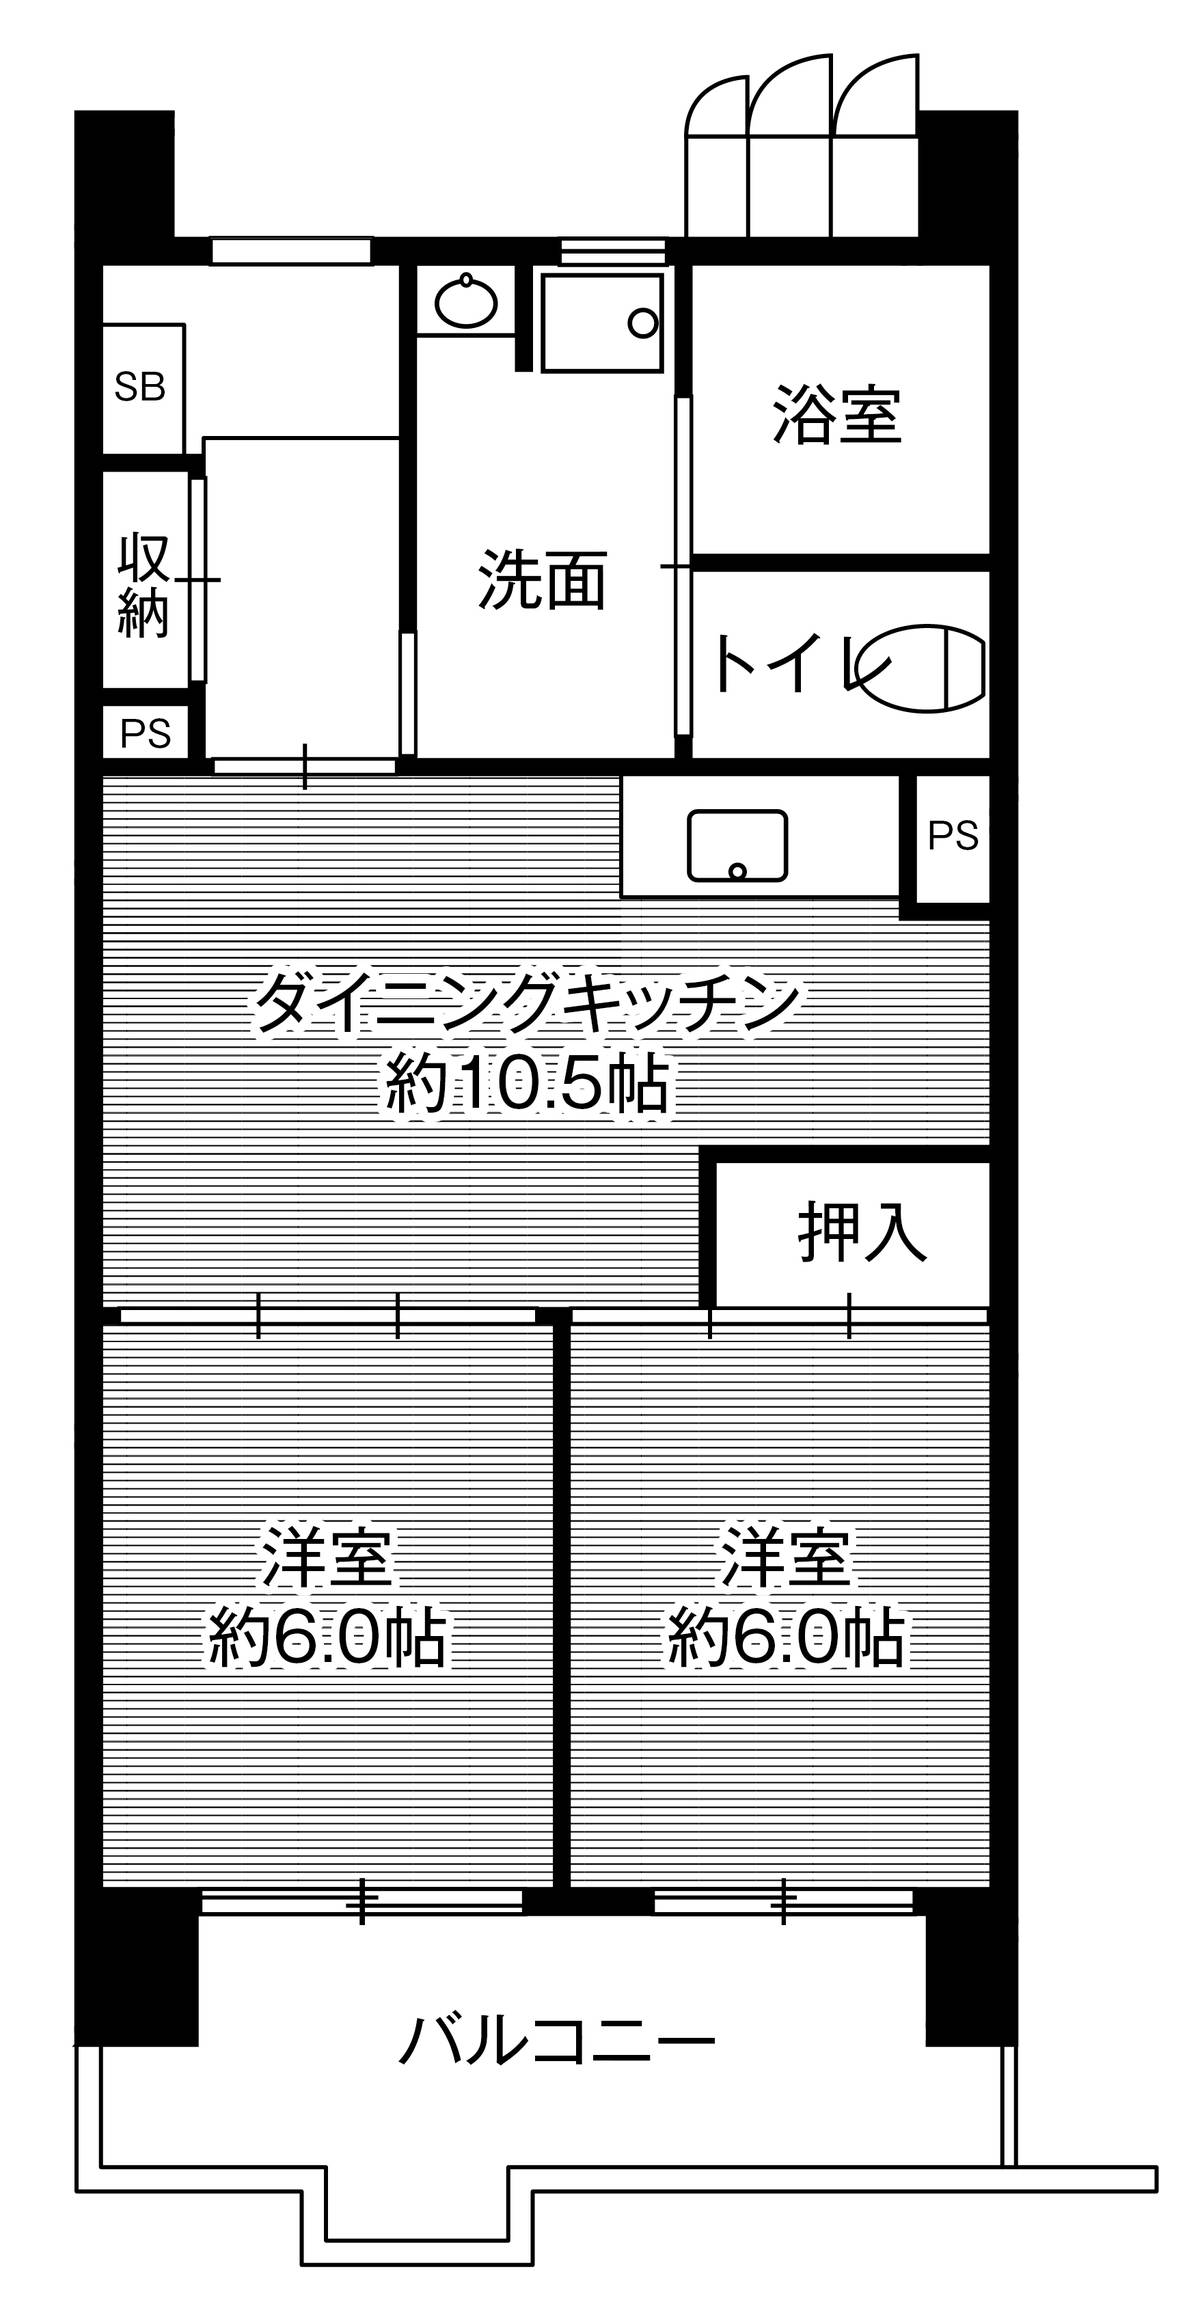 Sơ đồ phòng 2LDK của Village House Kasadera Tower ở Minami-ku